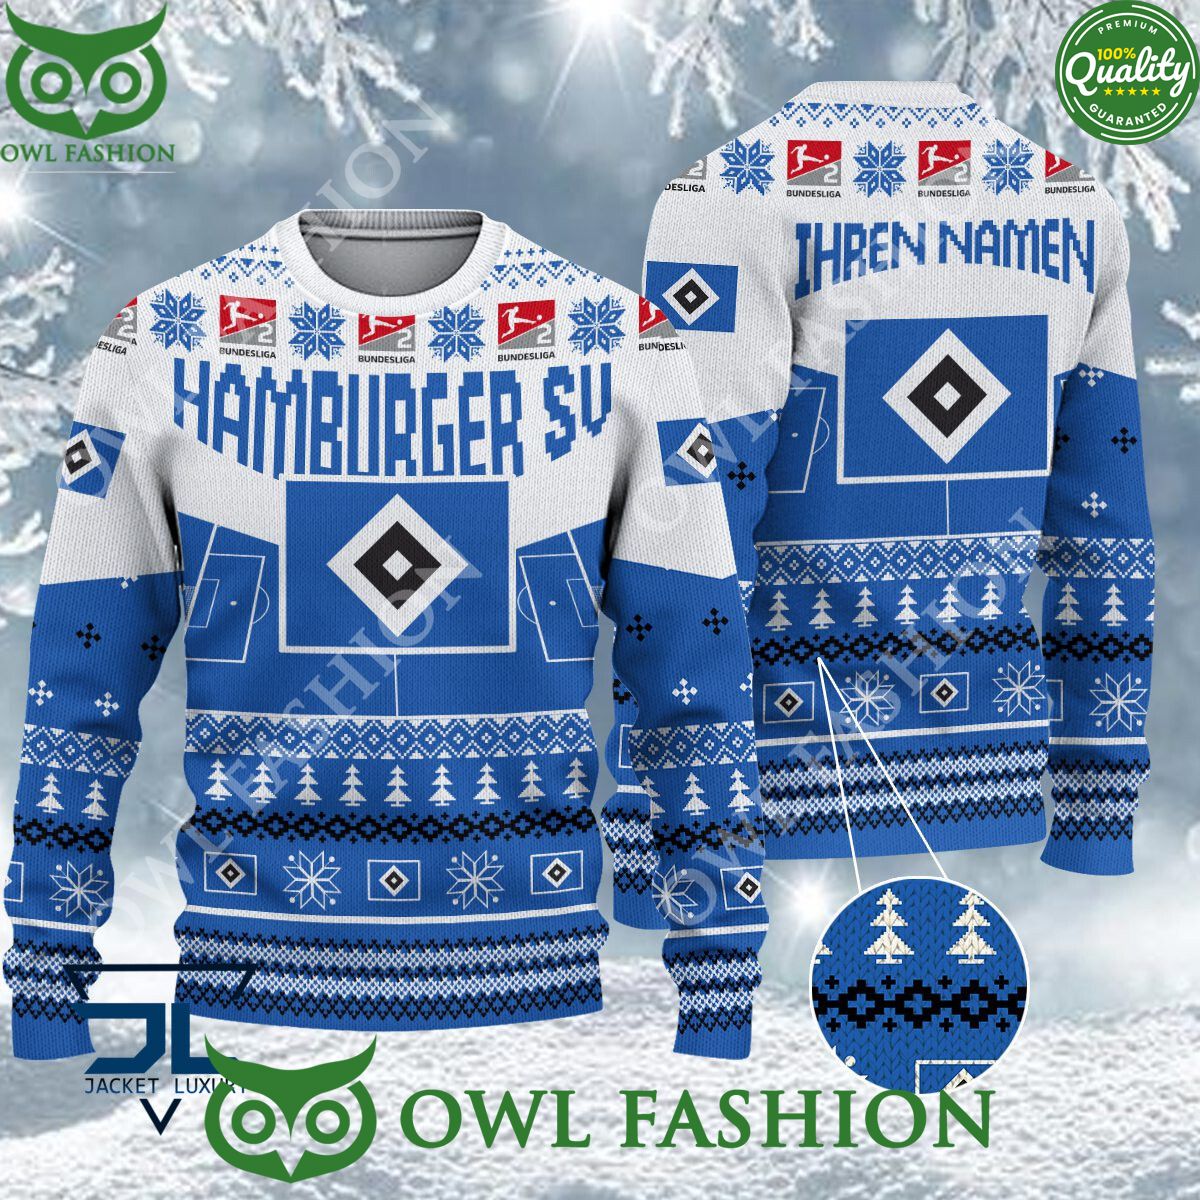 hamburger sv limited for bundesliga fans ugly sweater jumper 1 rX1A1.jpg